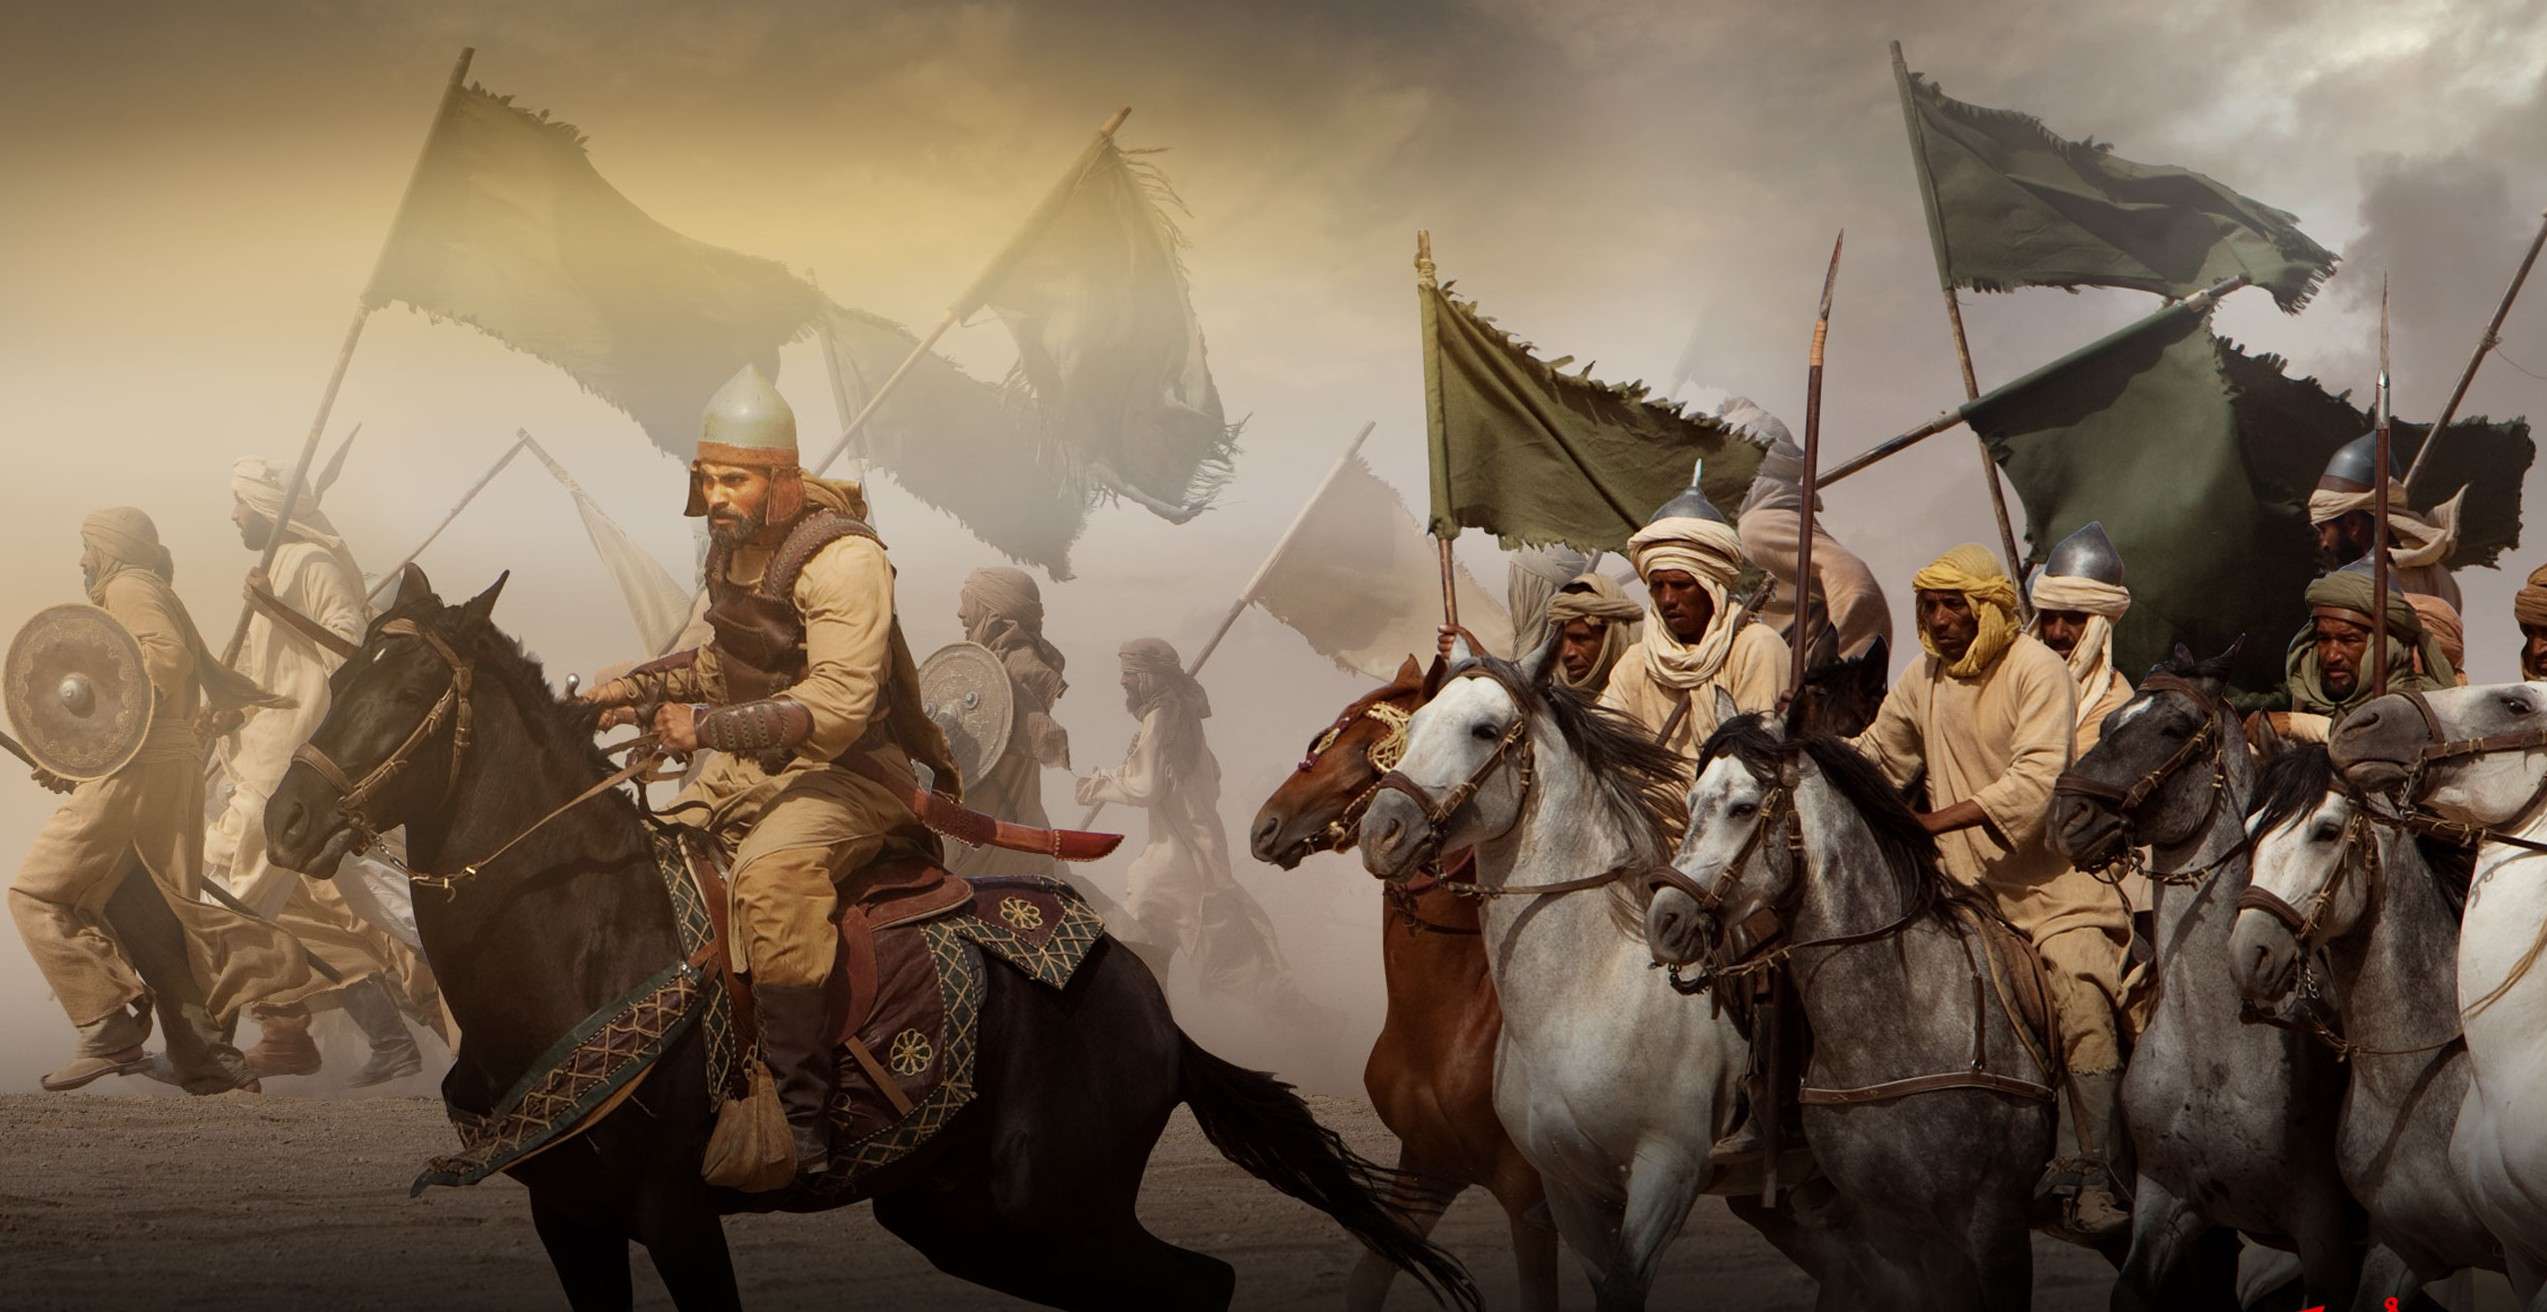 Великие войны мусульман. Халид ибн Валид битва при Бадре. Арабский воин Халид ибн Валид. Арабское завоевание Персии. Битва при Бадре 7 век.